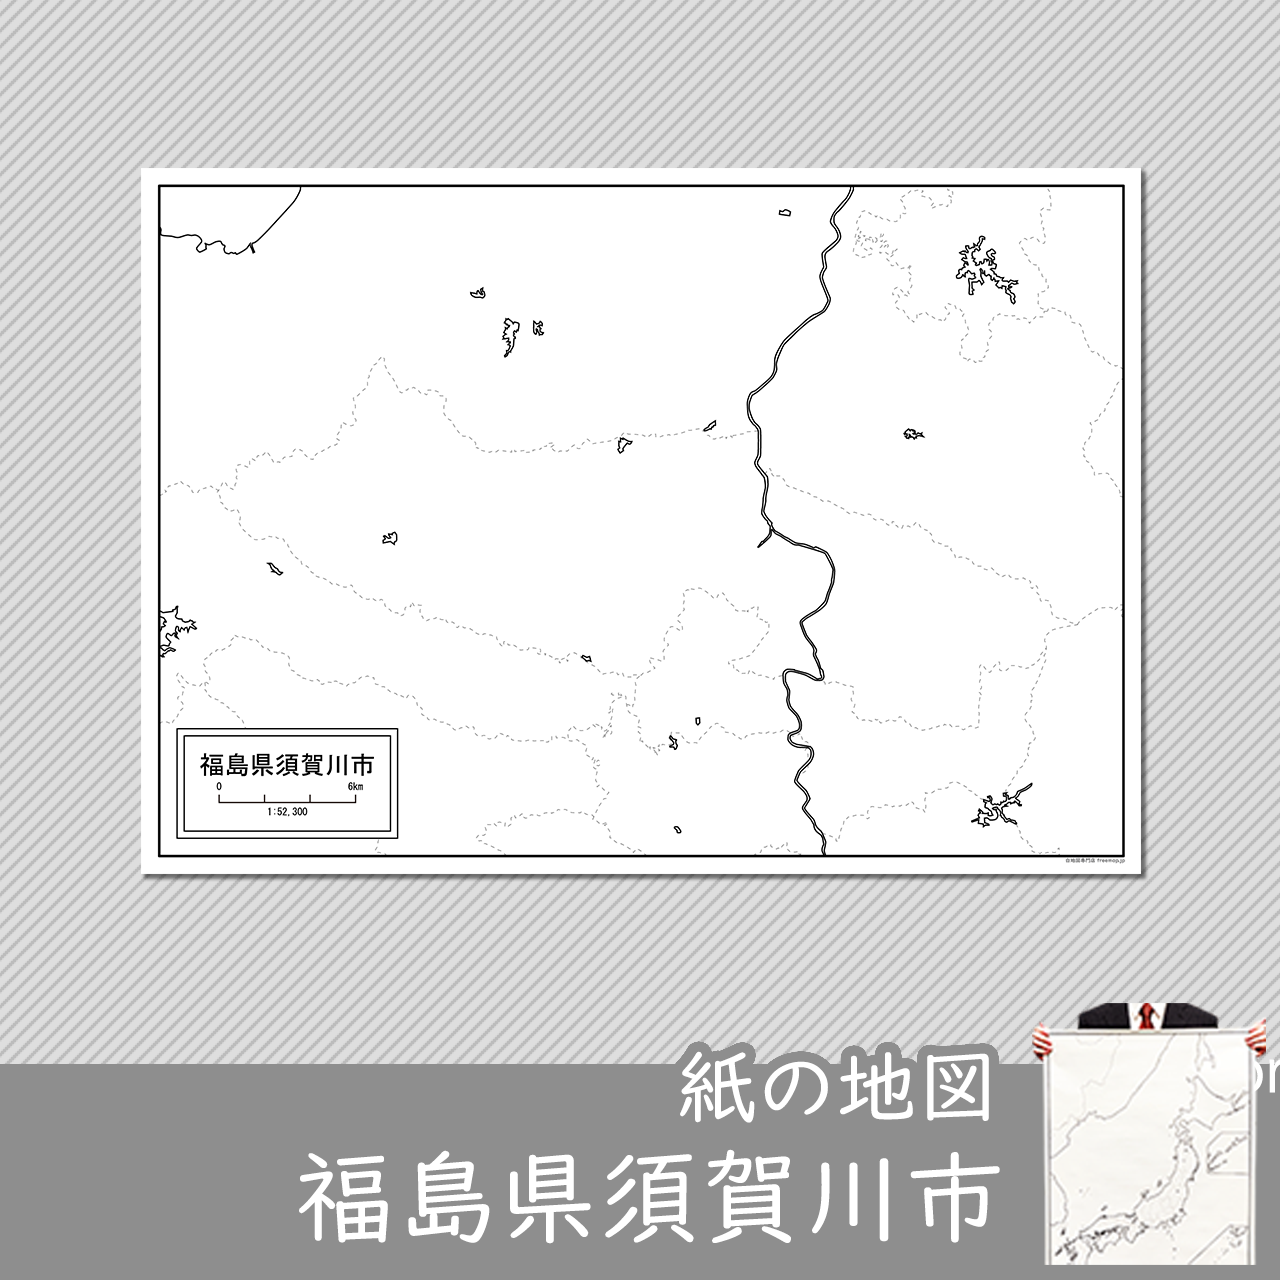 須賀川市の紙の白地図のサムネイル